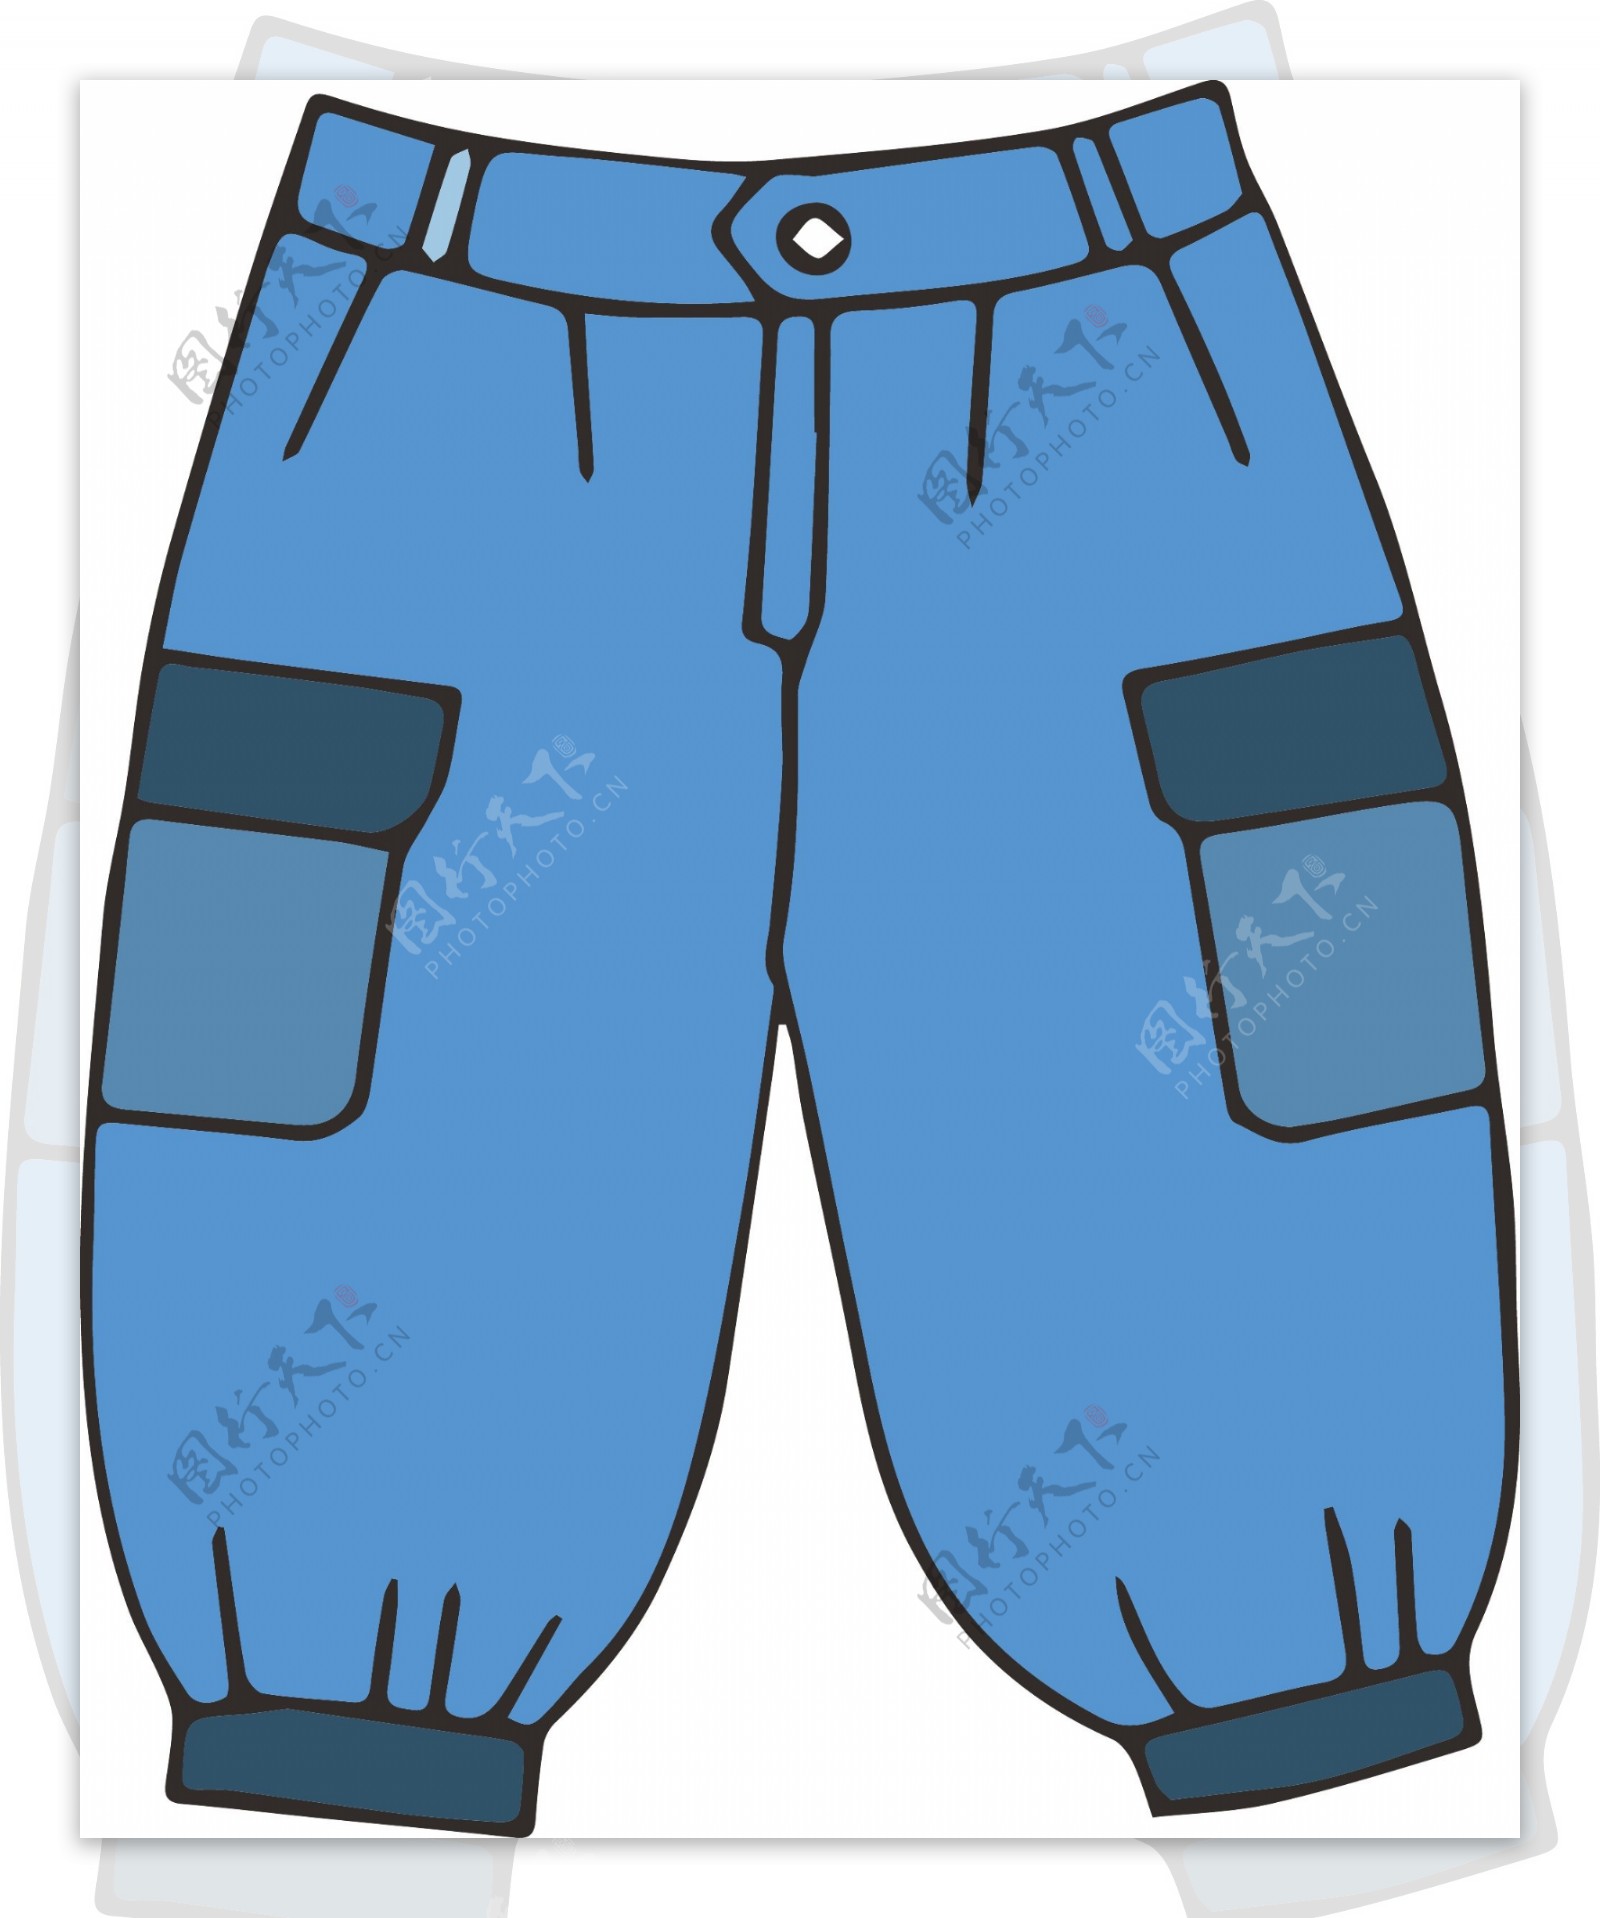 矢量蓝色设计短裤素材插画材料